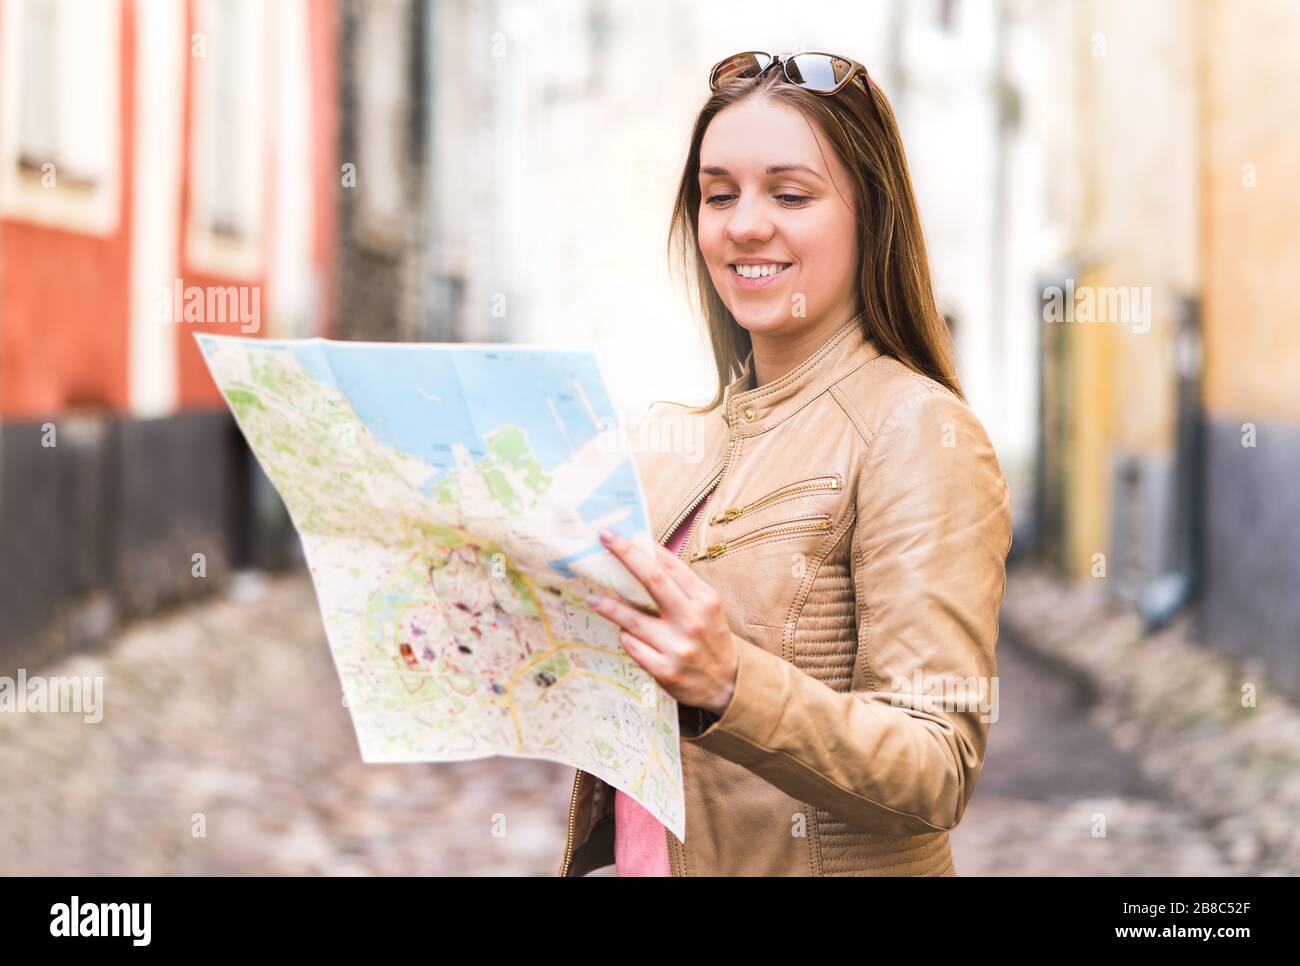 Fröhliche junge Frau liest Karte. Lächelnder Reisender bei der Navigation und Planung von Besichtigungstouren in der Stadt. Person im Urlaub in der Altstadt. Stockfoto